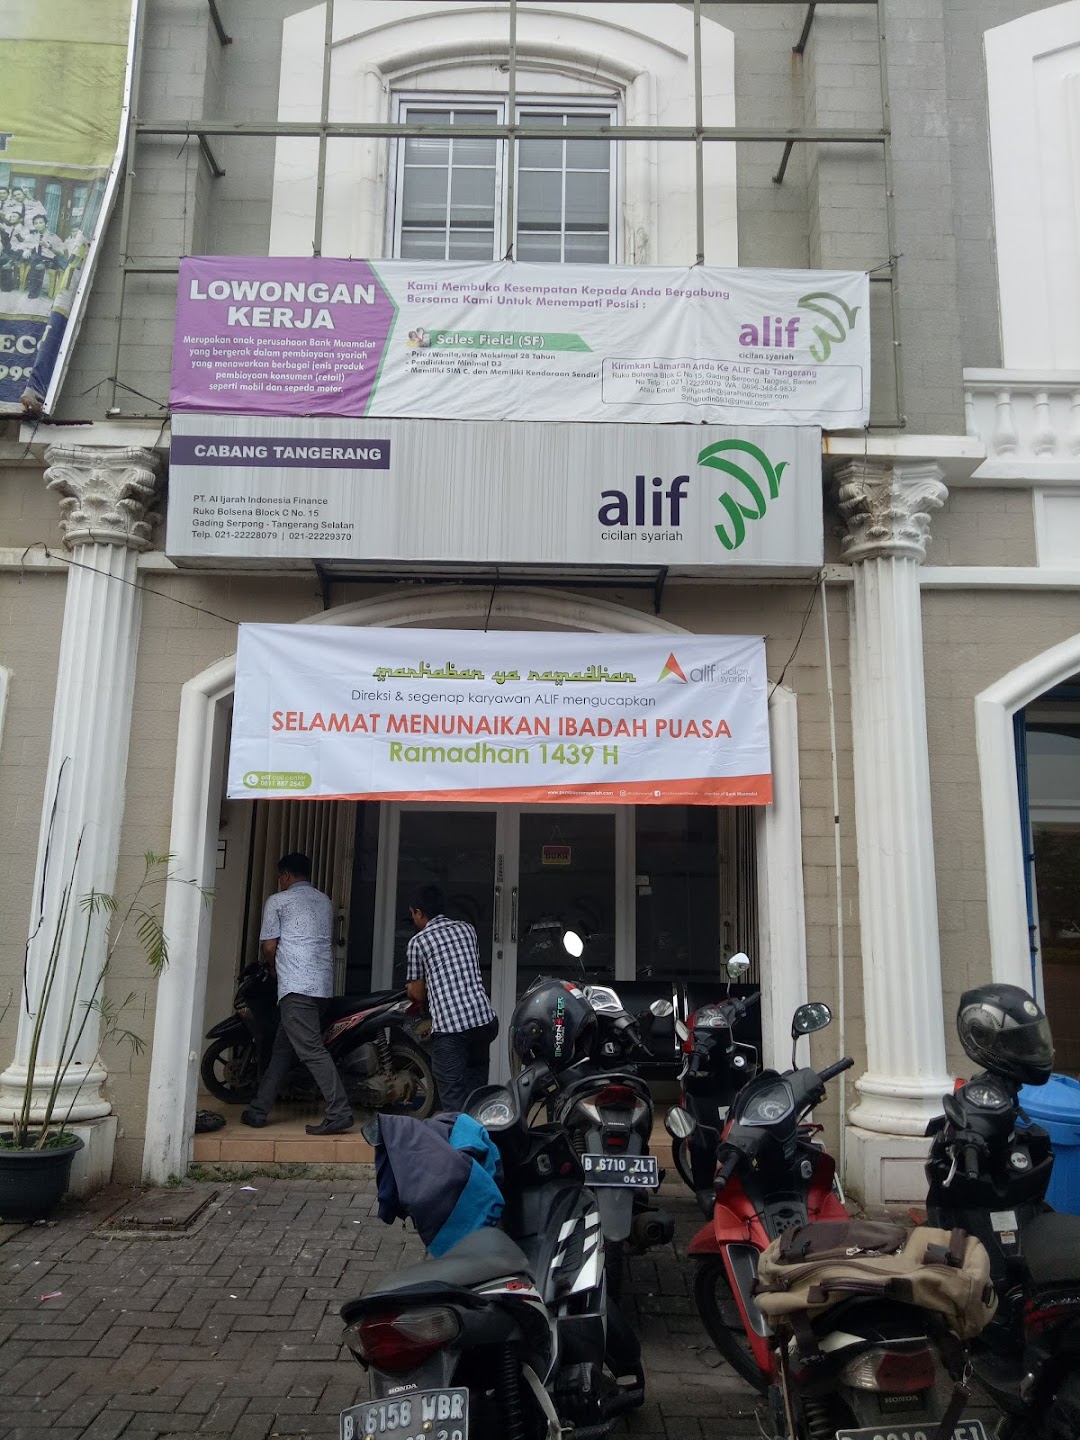 Al Ijarah Indonesia Finance Tangerang